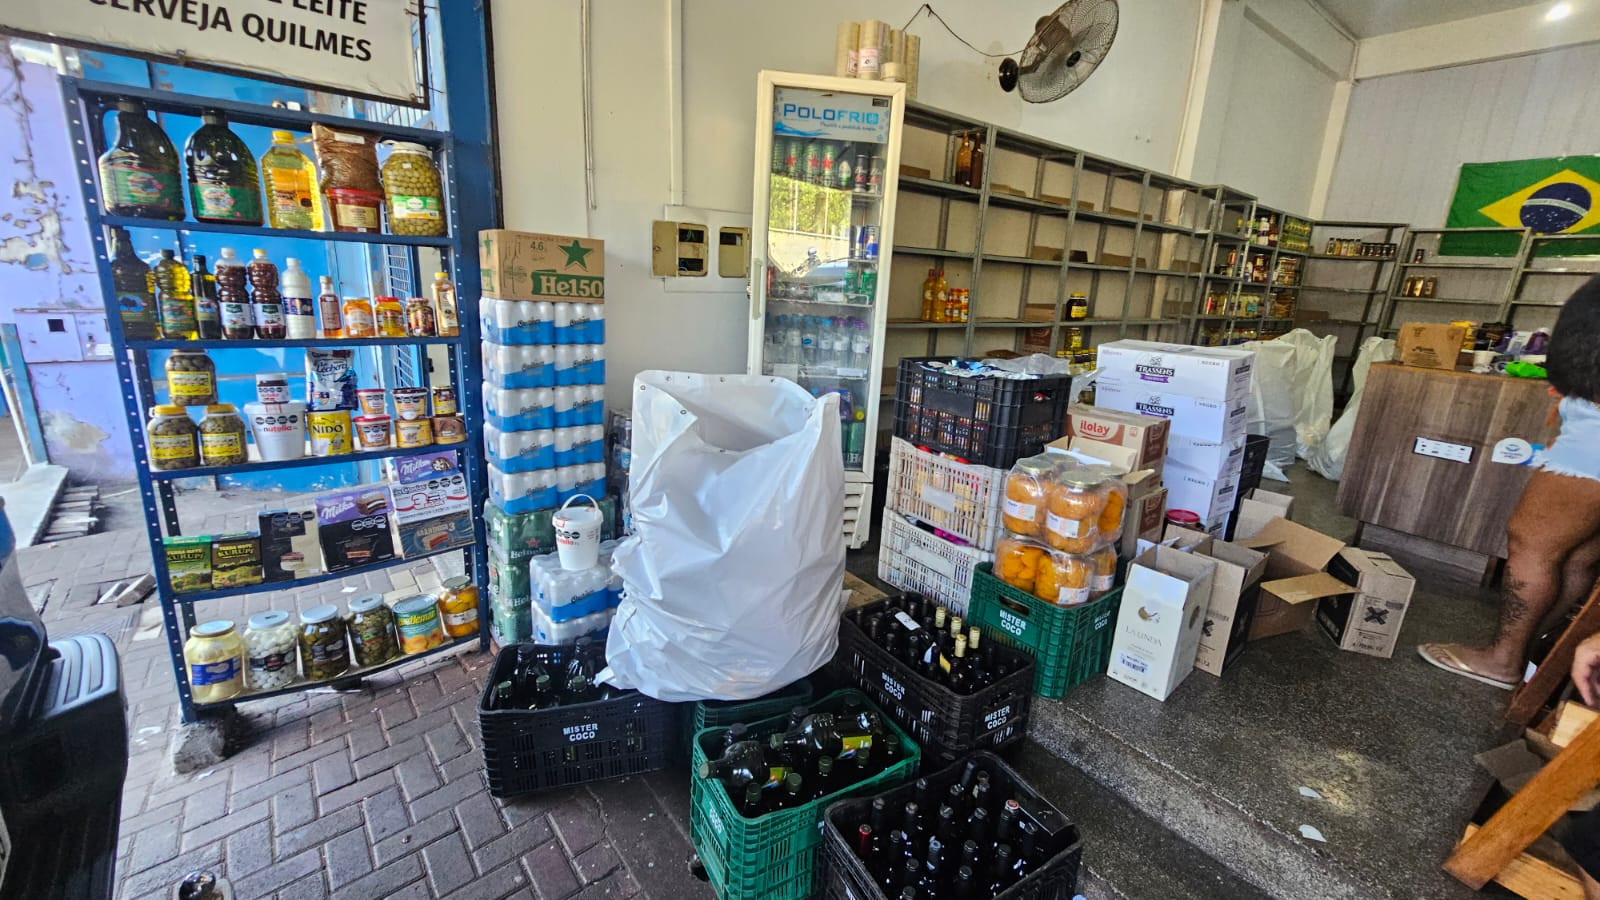 Aduana: Analistas-Tributários da Receita Federal atuam na retenção de 150 litros de azeite de oliva contrabandeados em Foz do Iguaçu/PR